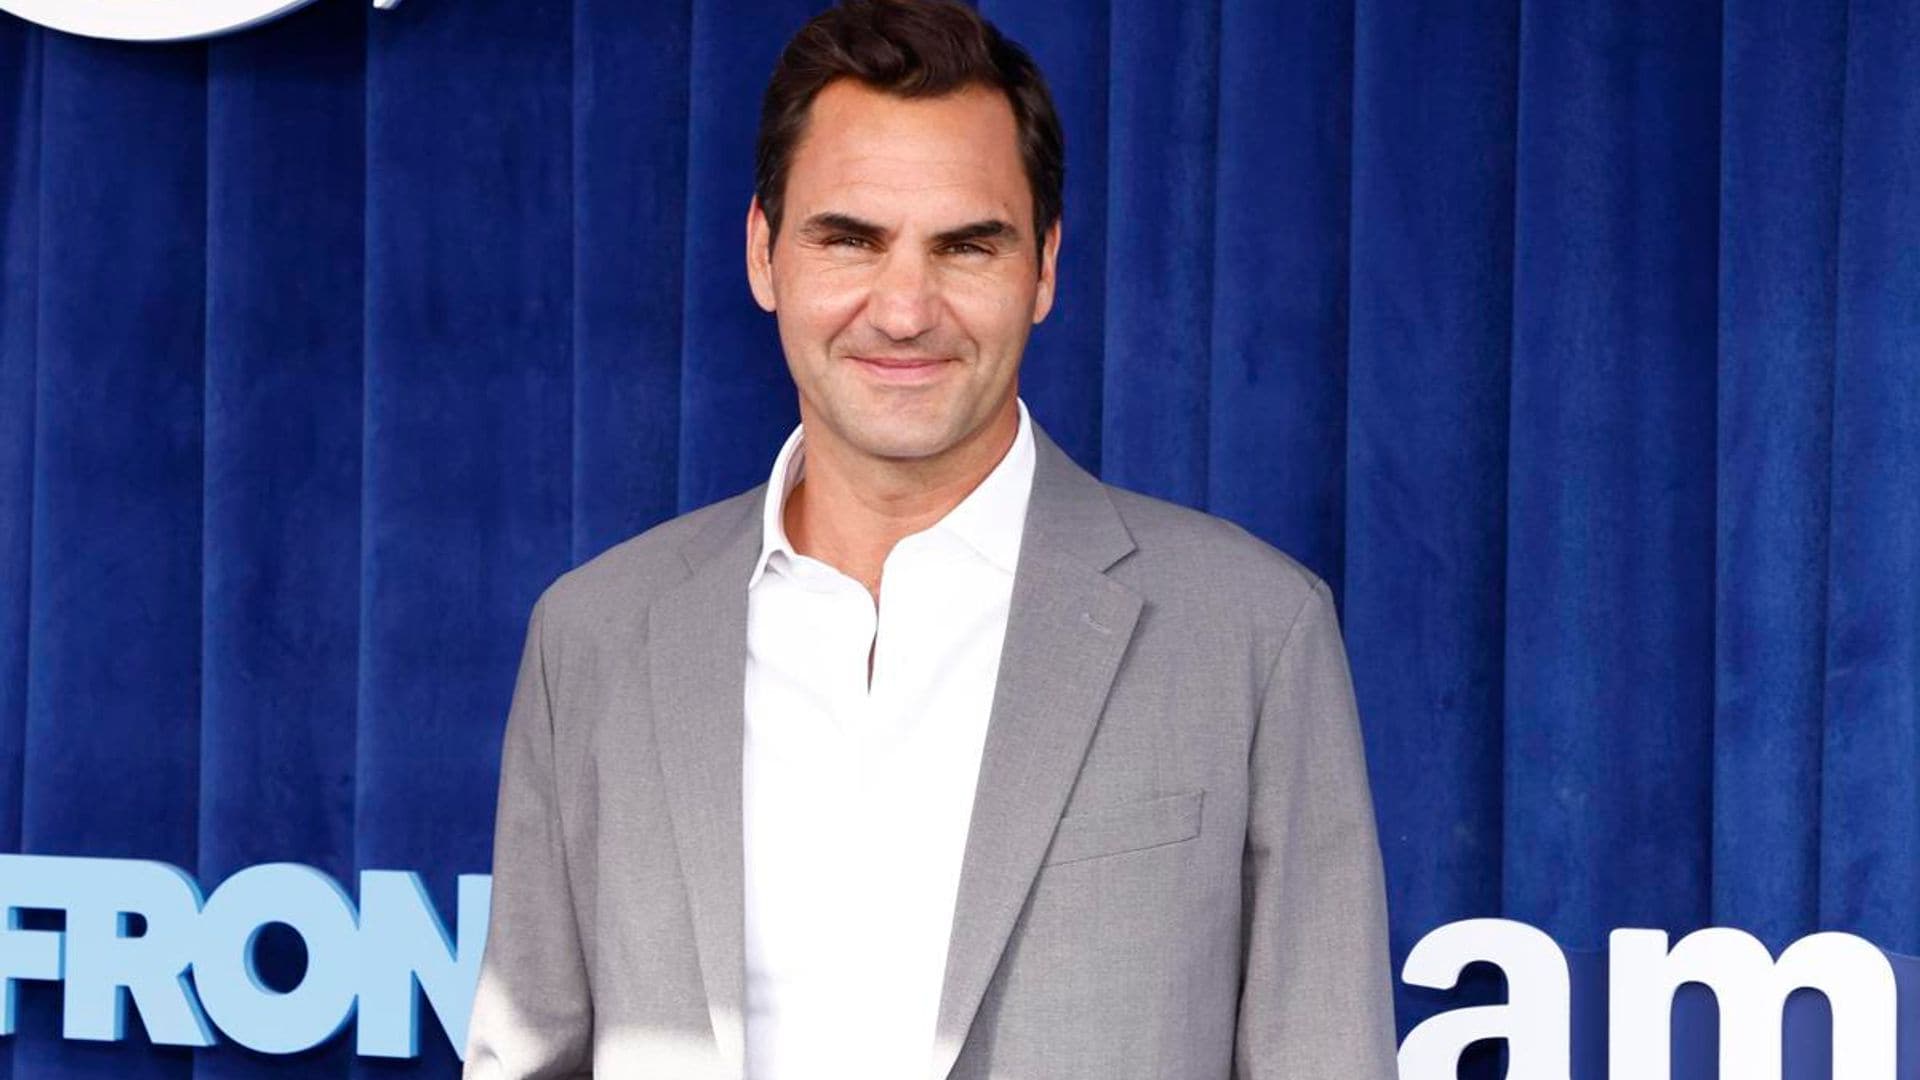 Roger Federer’s inspiring speech for Dartmouth University graduates goes viral